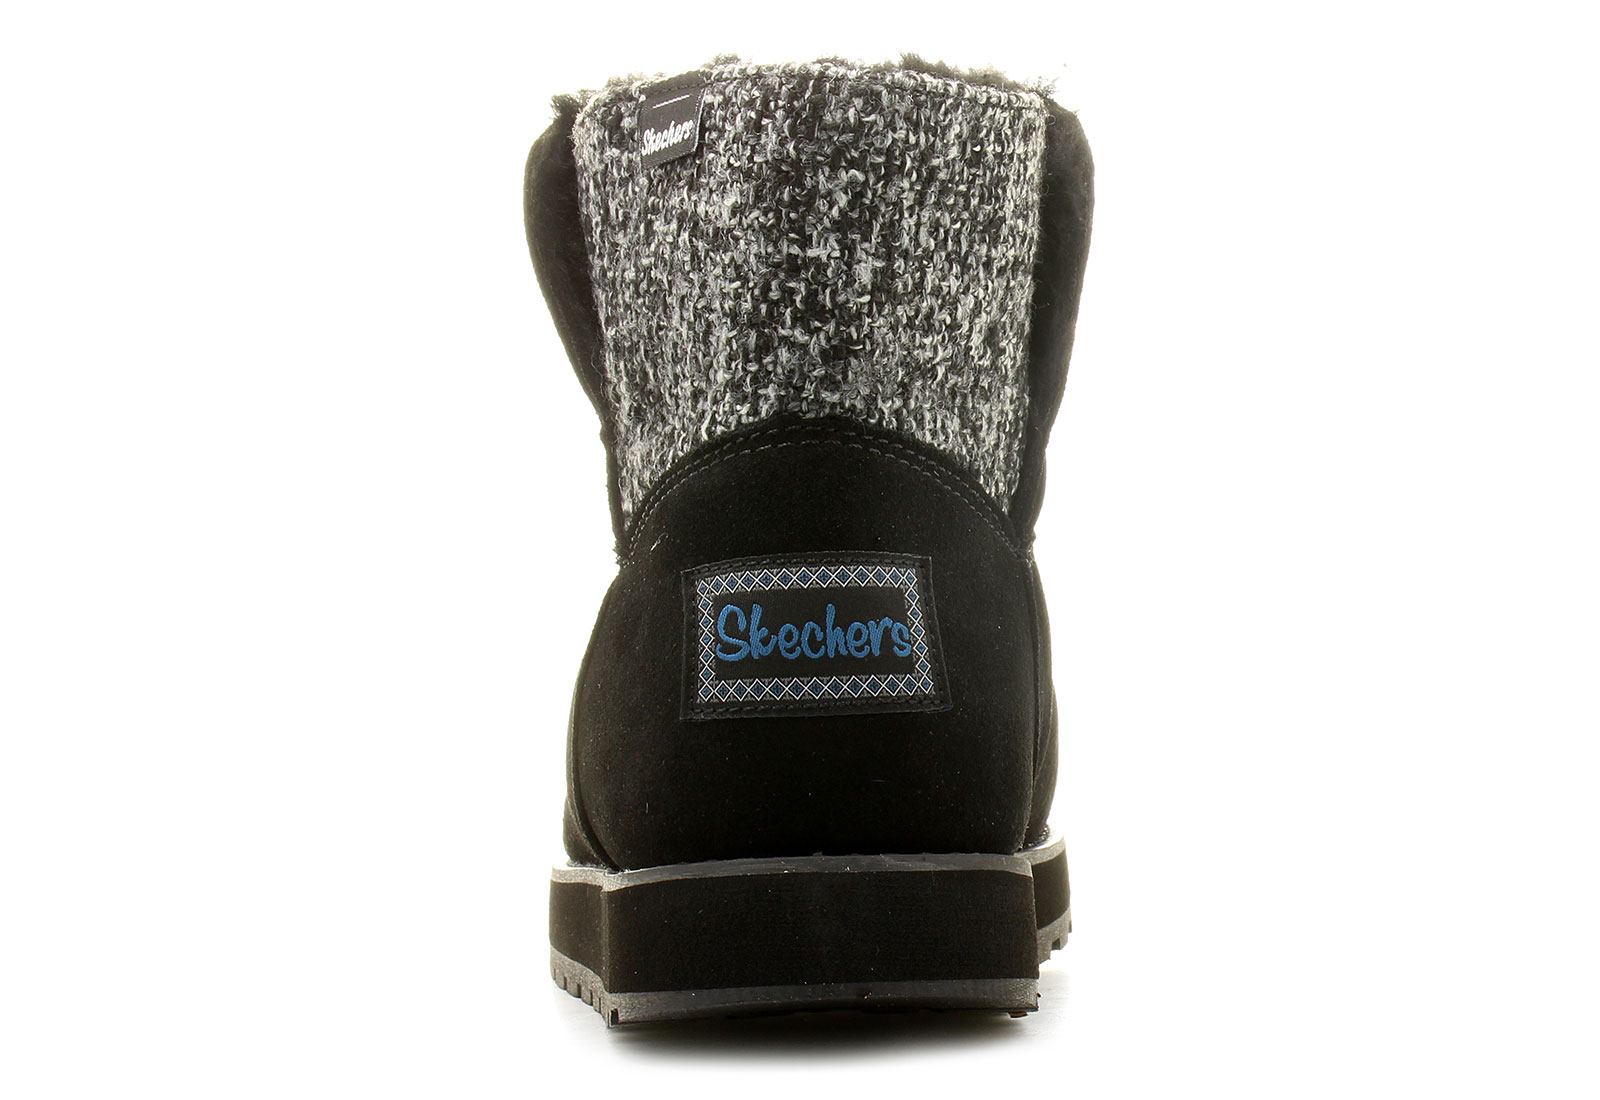 Skechers Botki - - Peekaboo - 48803-blk Obuwie buty damskie, męskie, dziecięce w Office Shoes